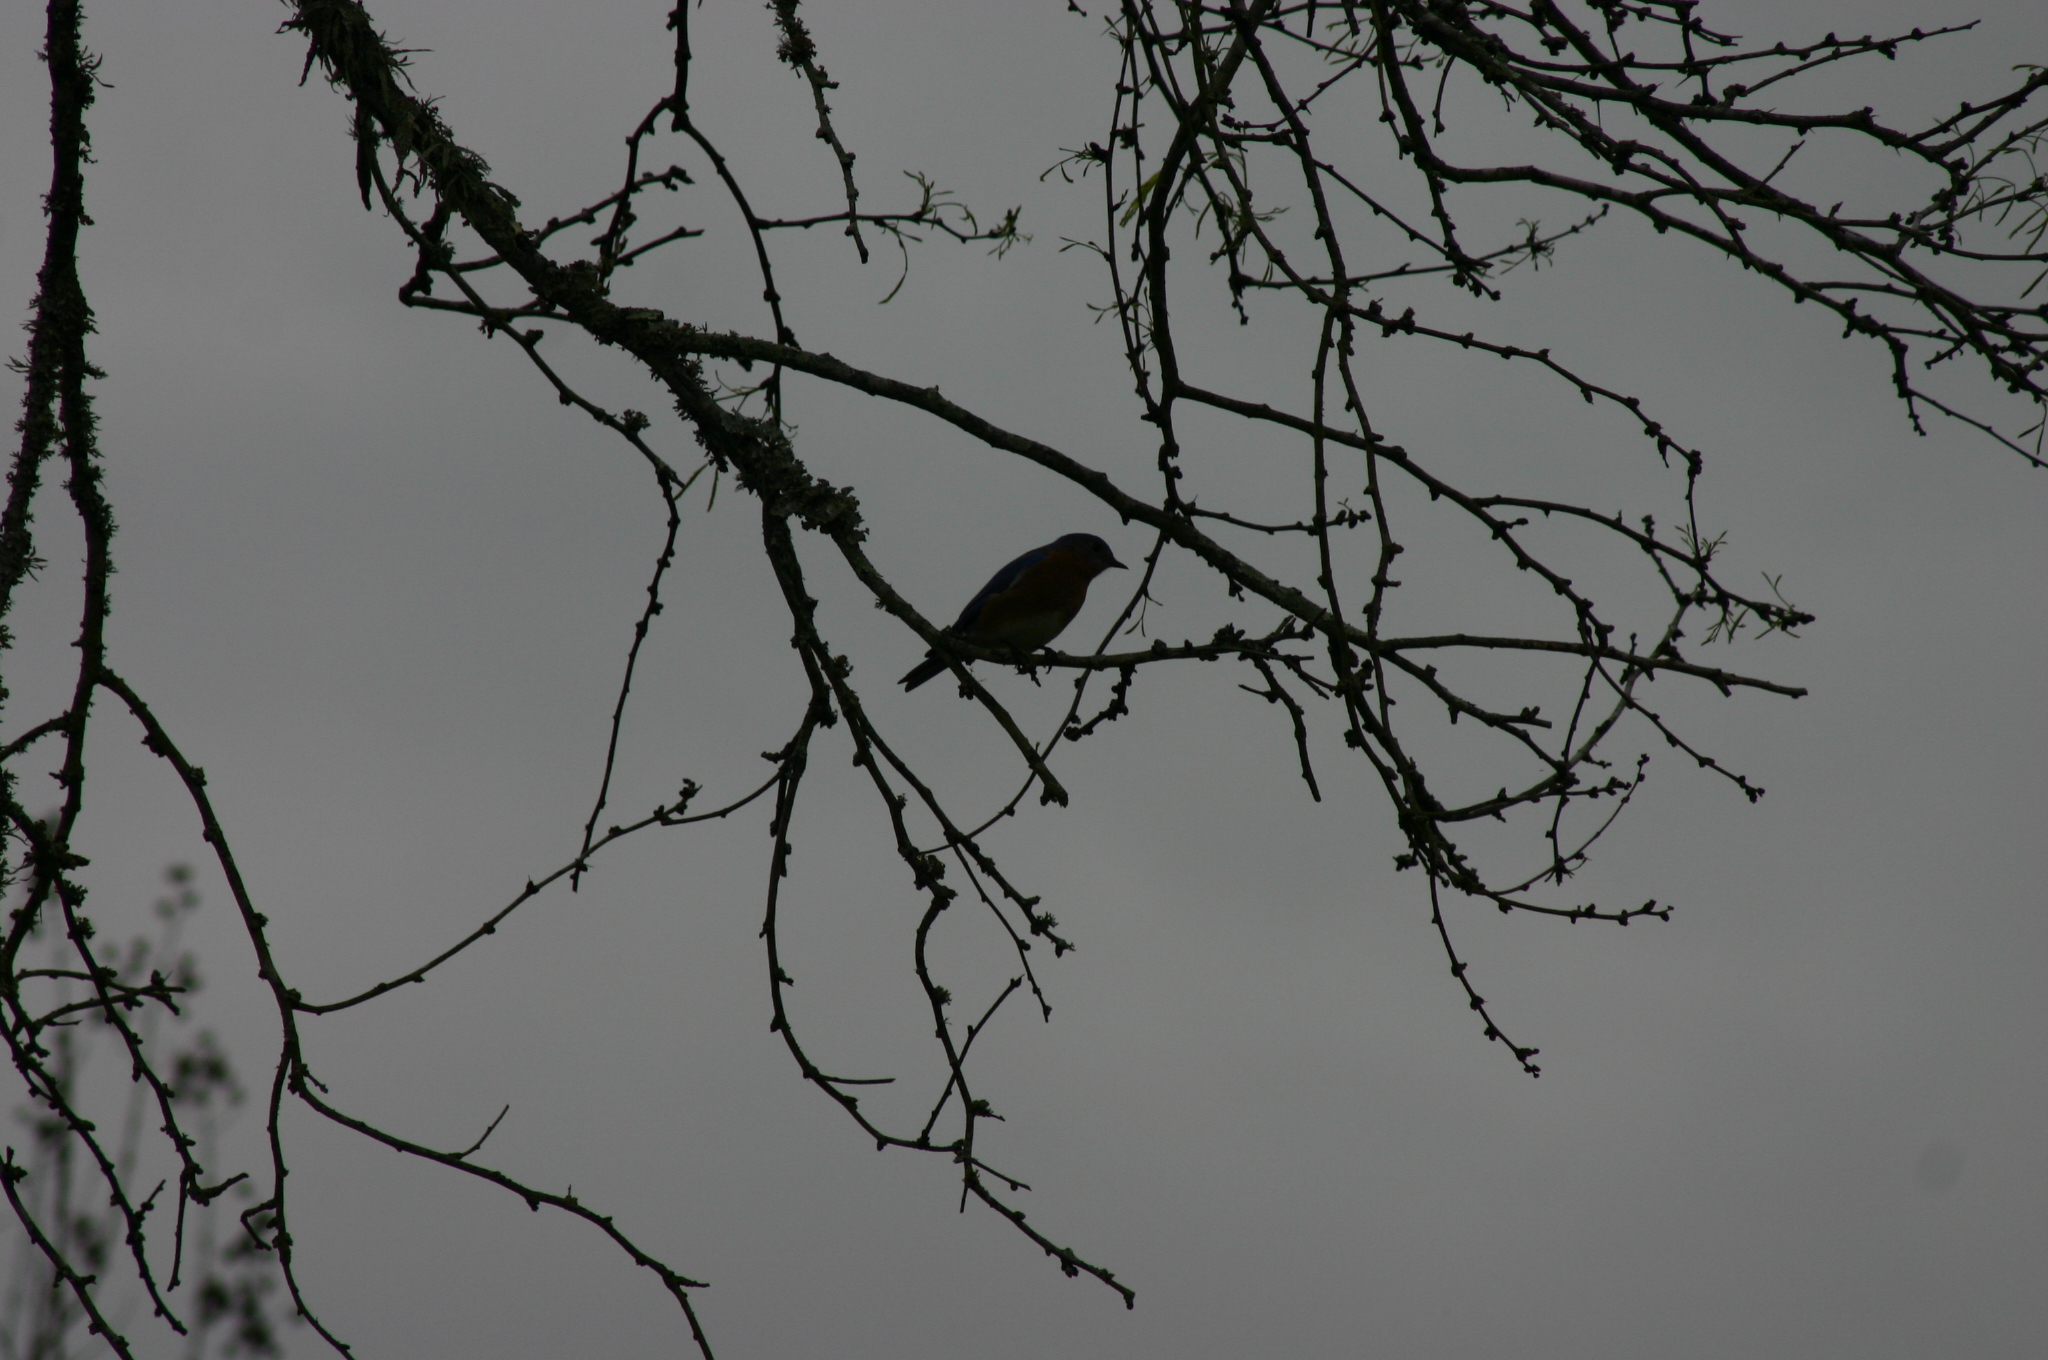 Bird at twilight photo